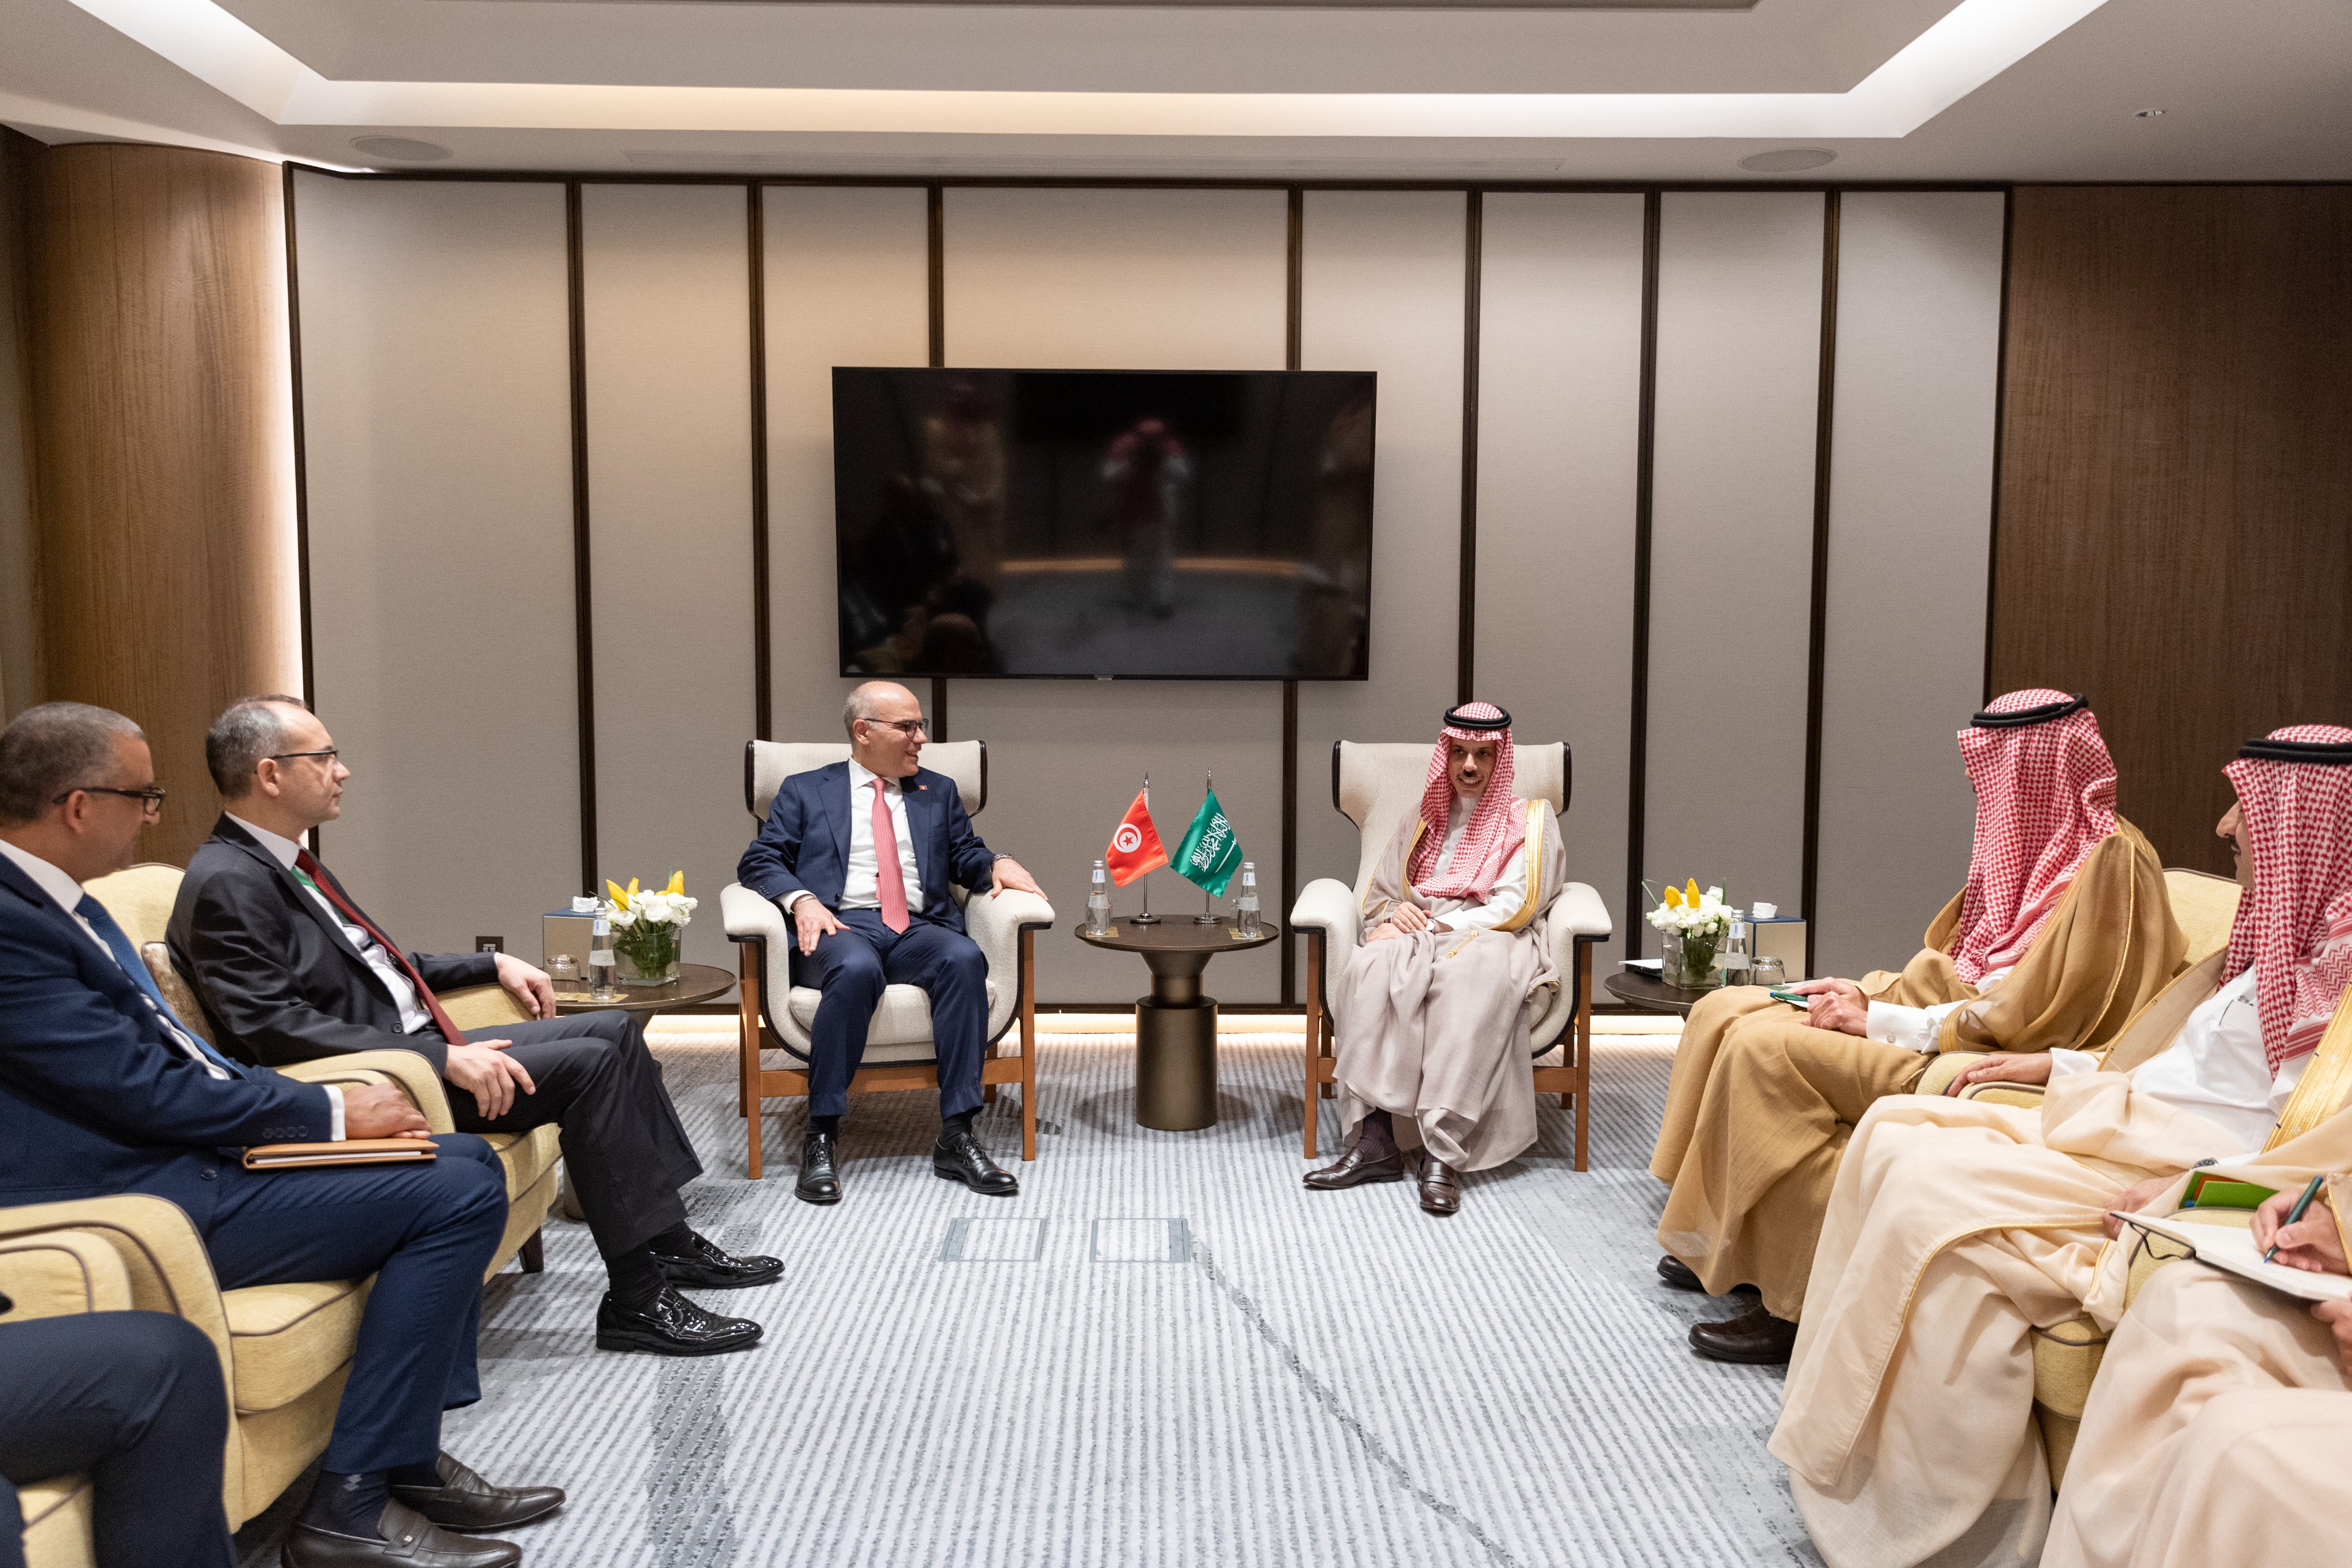 Saudi Arabia’s Foreign Minister Prince Faisal bin Farhan meets with his Tunisian counterpart Nabil Ammar in Jeddah on Thursday. (SPA)